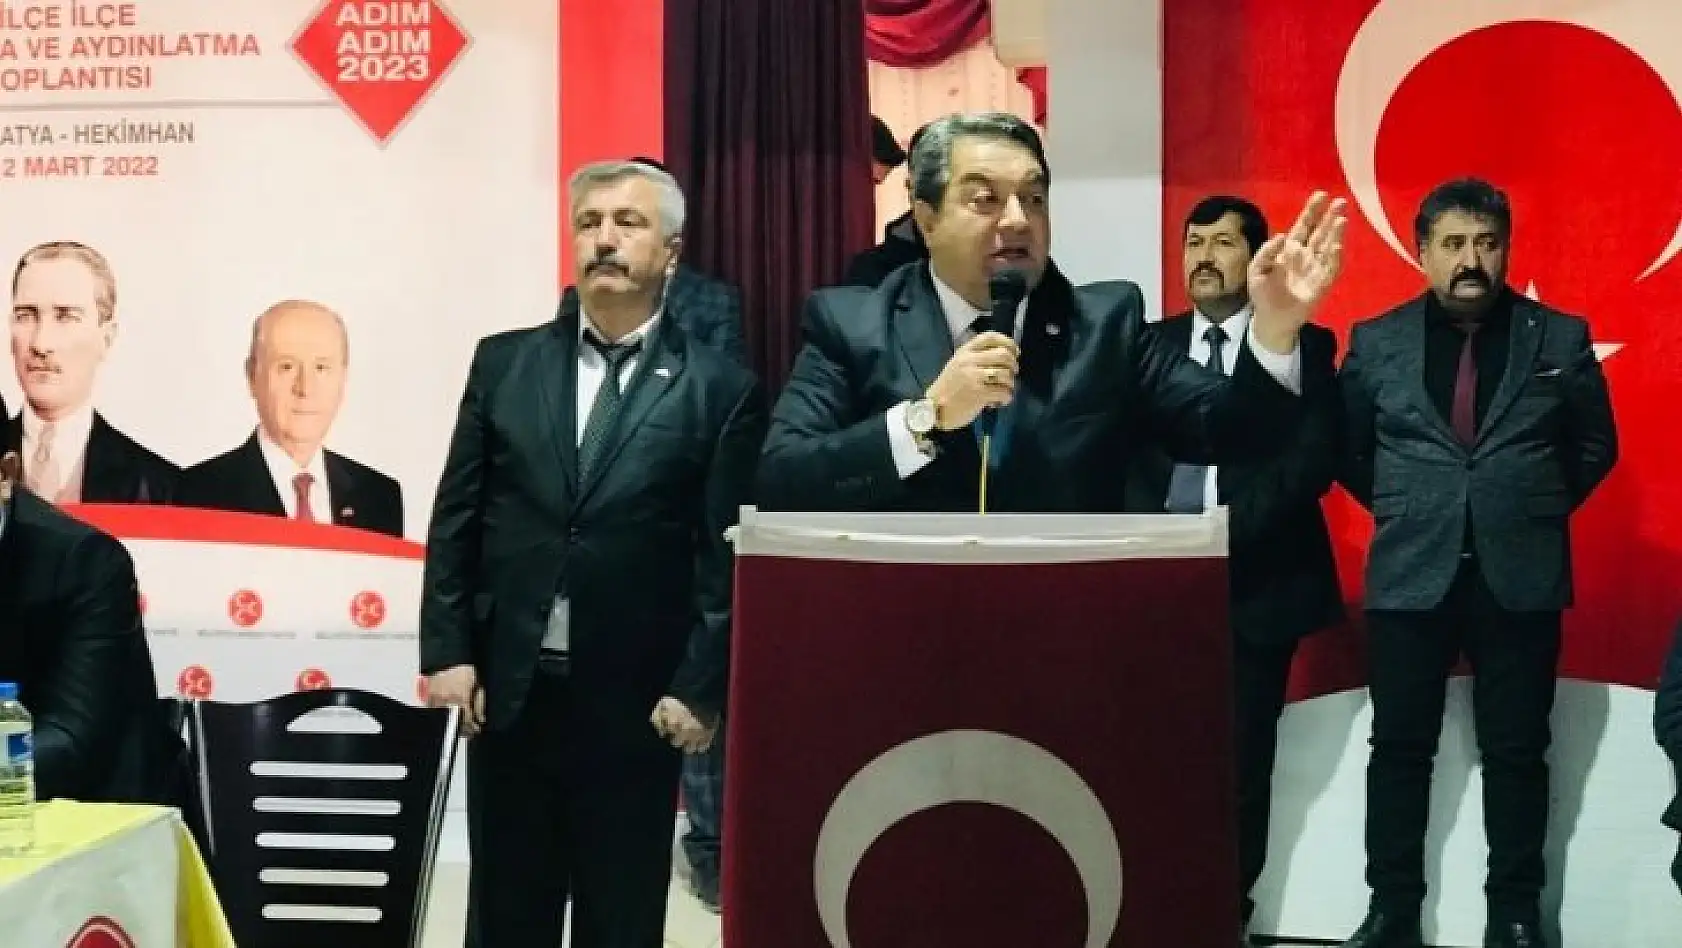 Cumhur İttifakı Türkiye'deki tek gerçektir